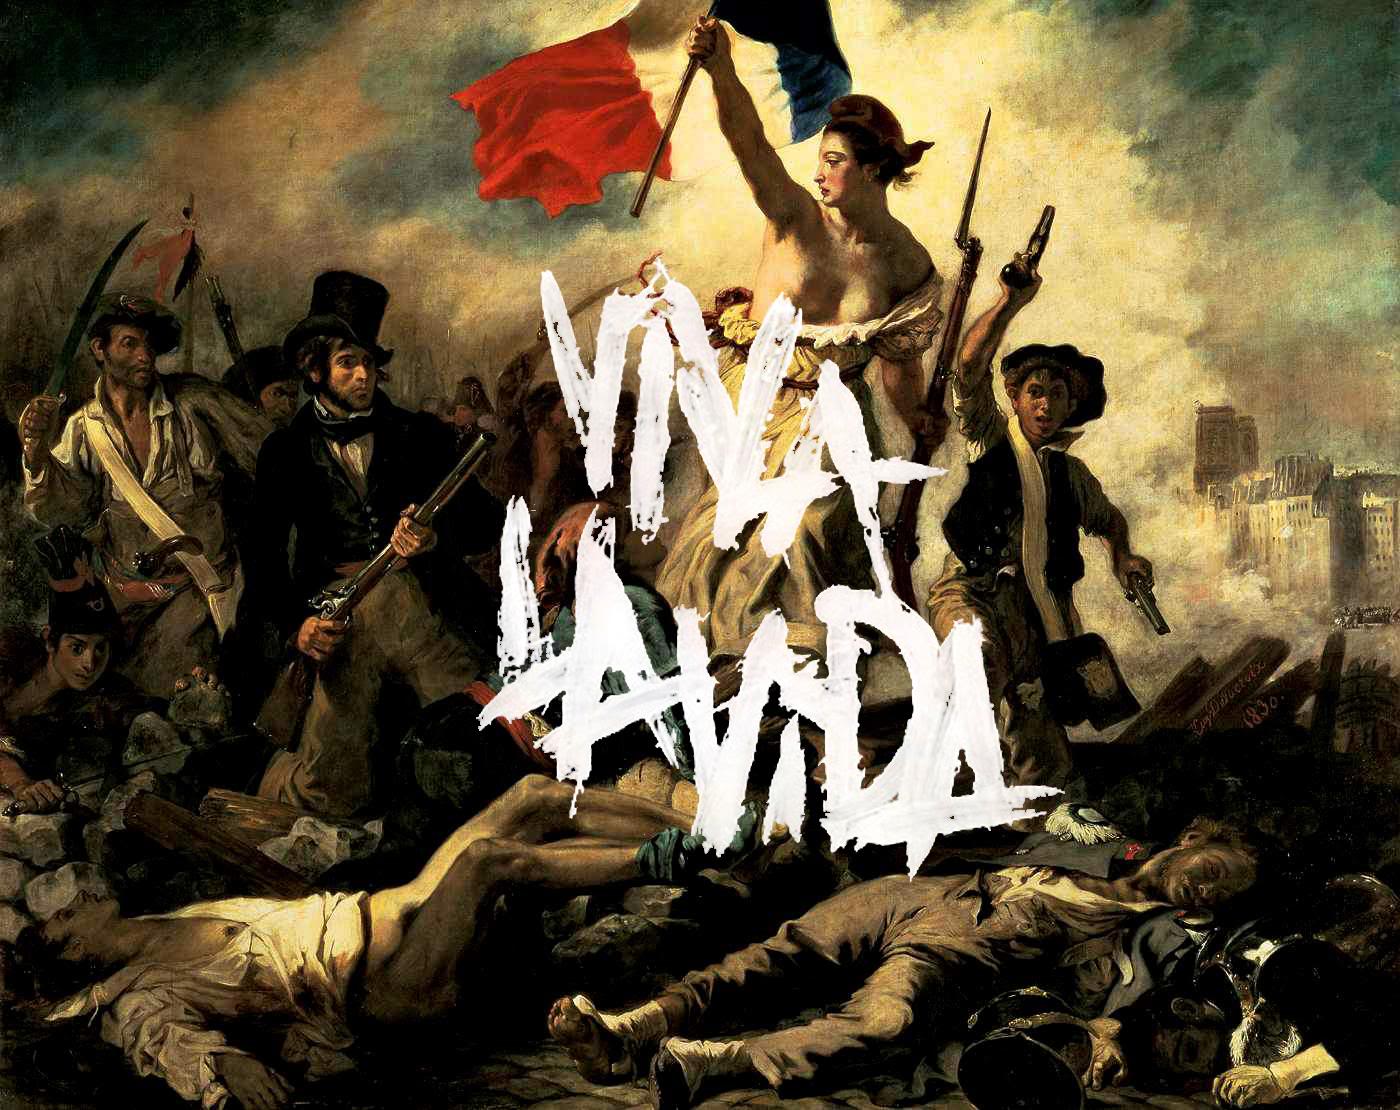 Viva La Vida Wallpapers